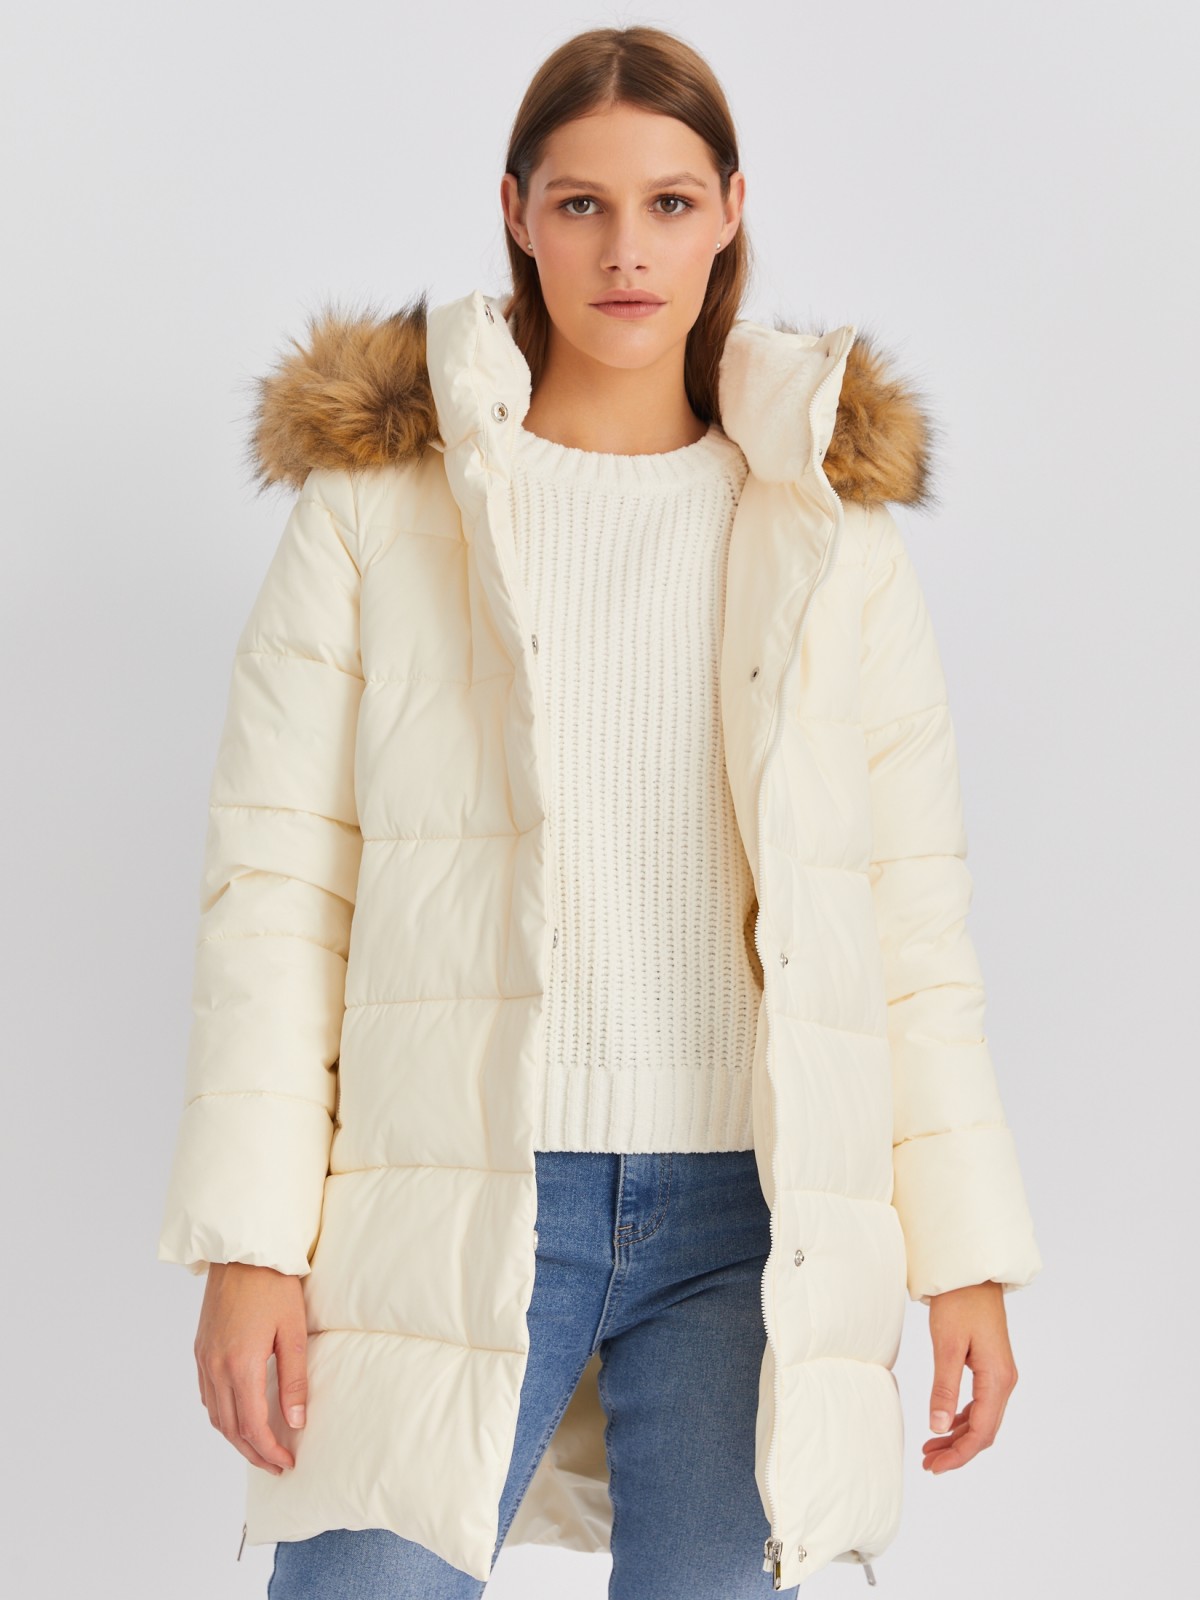 Тёплая куртка-пальто с капюшоном и боковыми шлицами на молниях zolla 022425212014, цвет молоко, размер XS